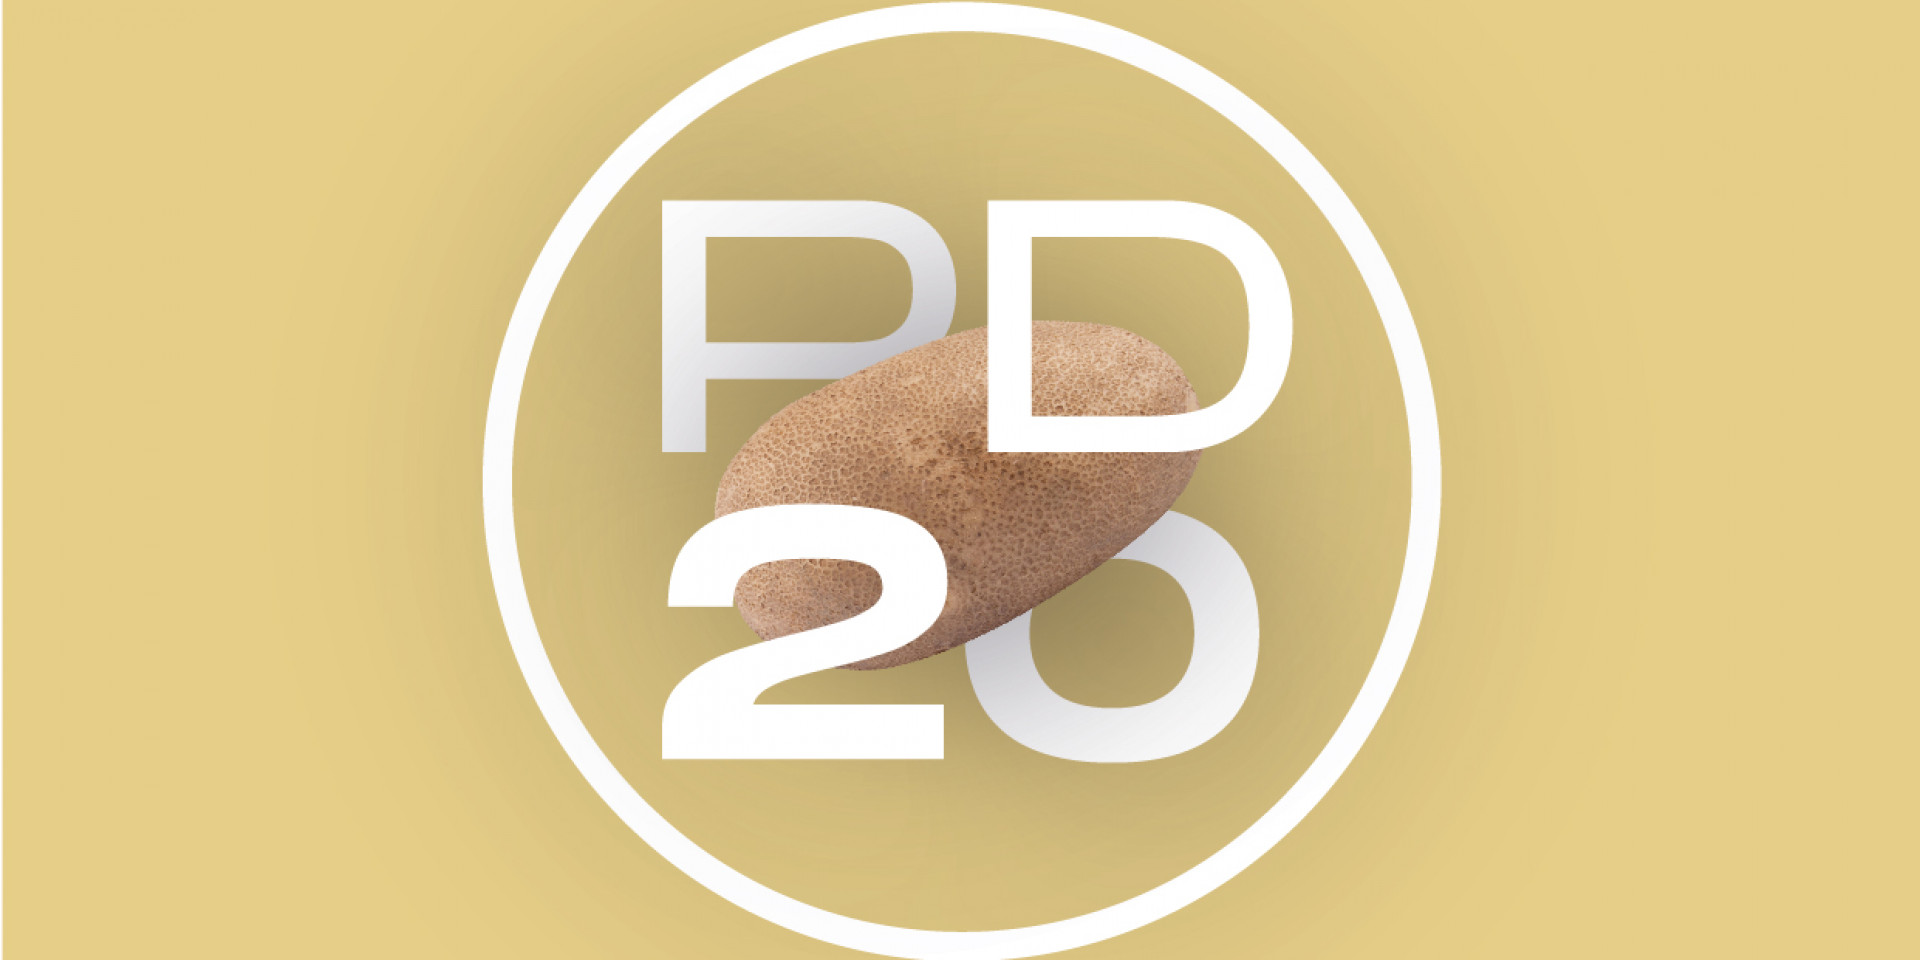 HZPC launches Potato Days Live